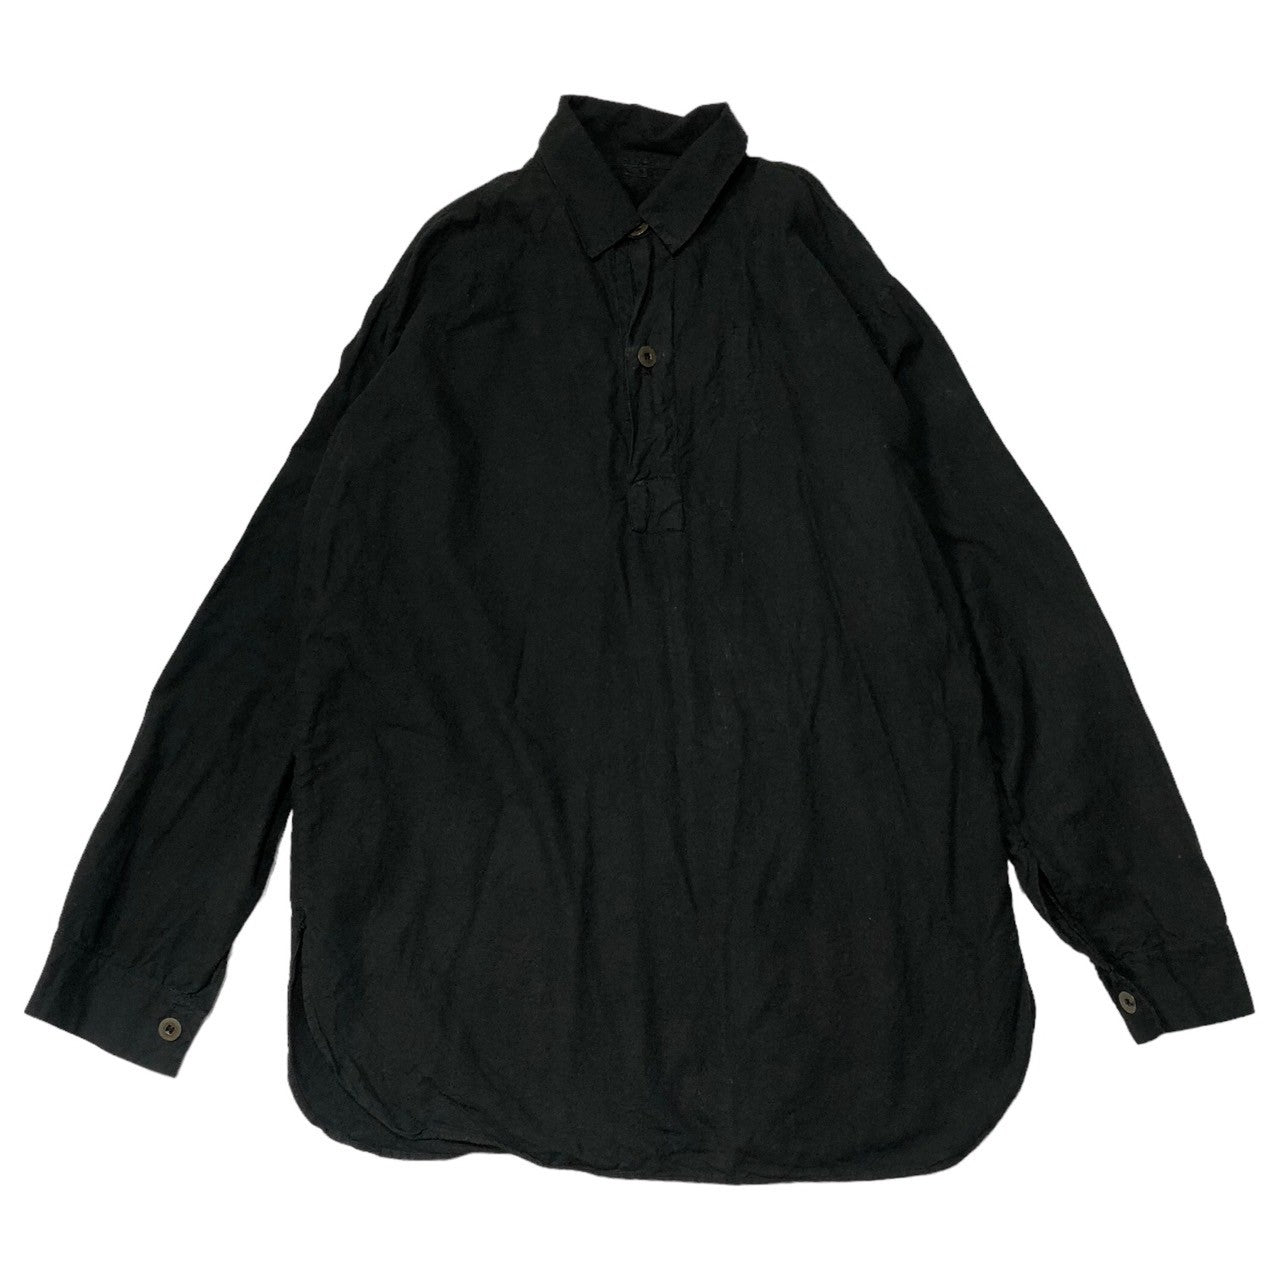 Euro vintage(ヨーロッパヴィンテージ) 80~90's VINTAGE pullover shirts ヴィンテージ プルオーバー シャツ グランパシャツ SIZE 41 ブラック